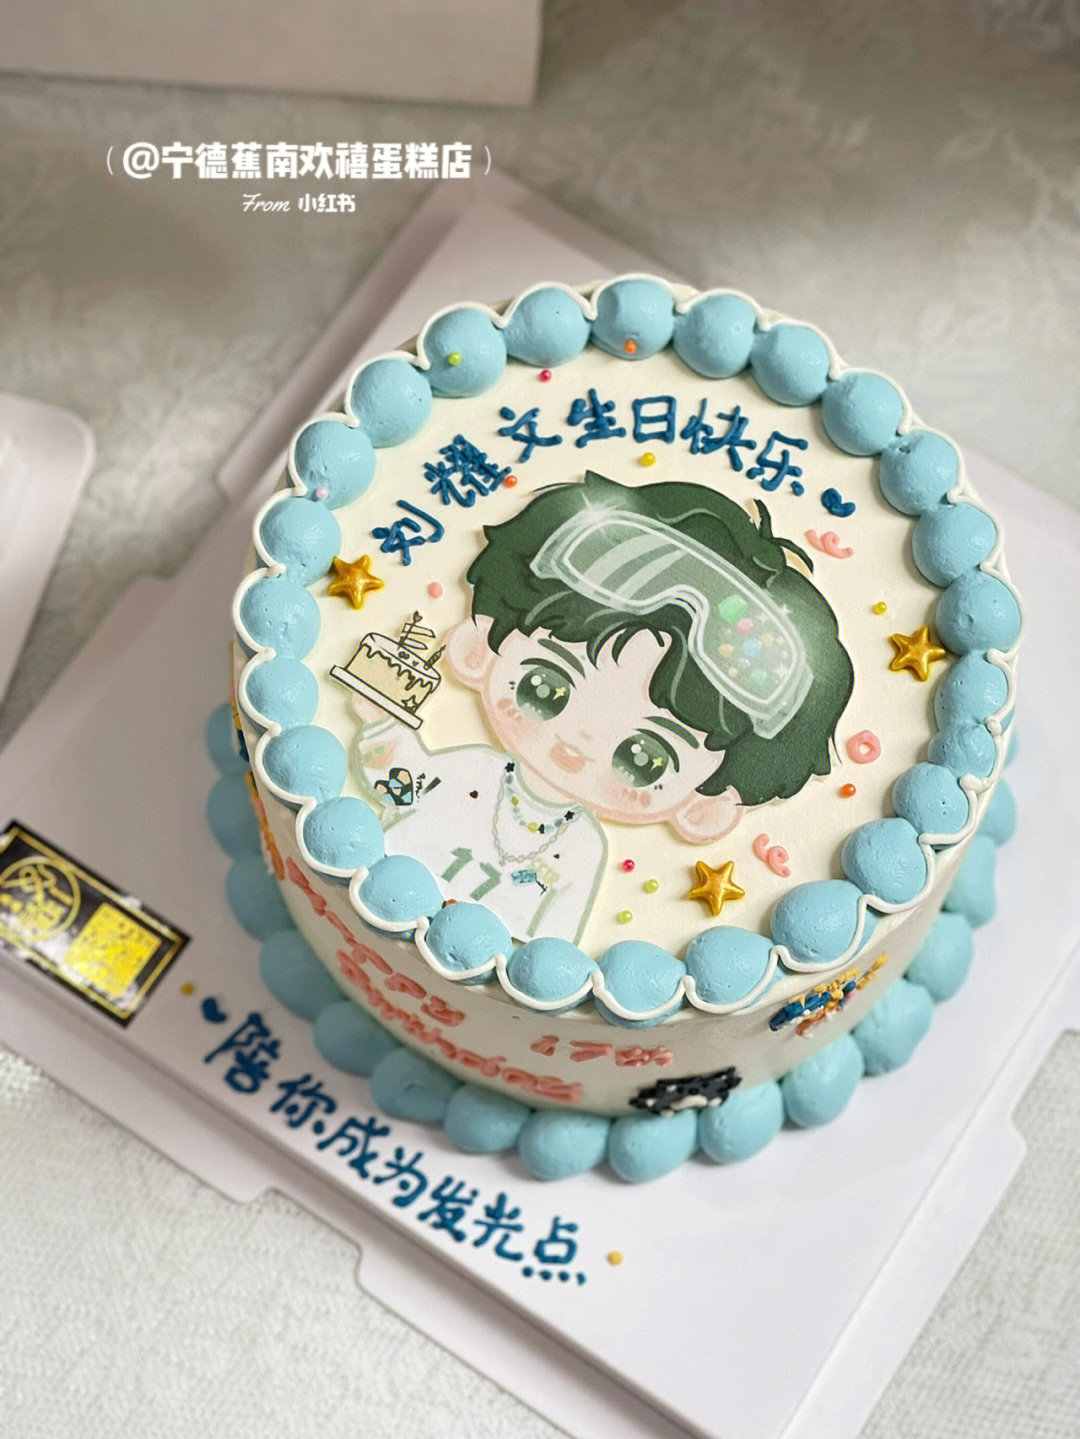 刘耀文16岁生日蛋糕图片